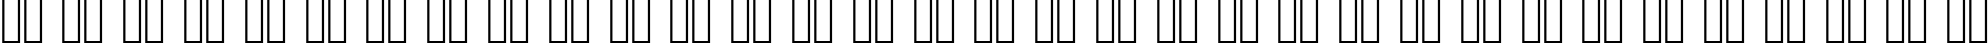 Пример написания русского алфавита шрифтом Baskerville Old Face